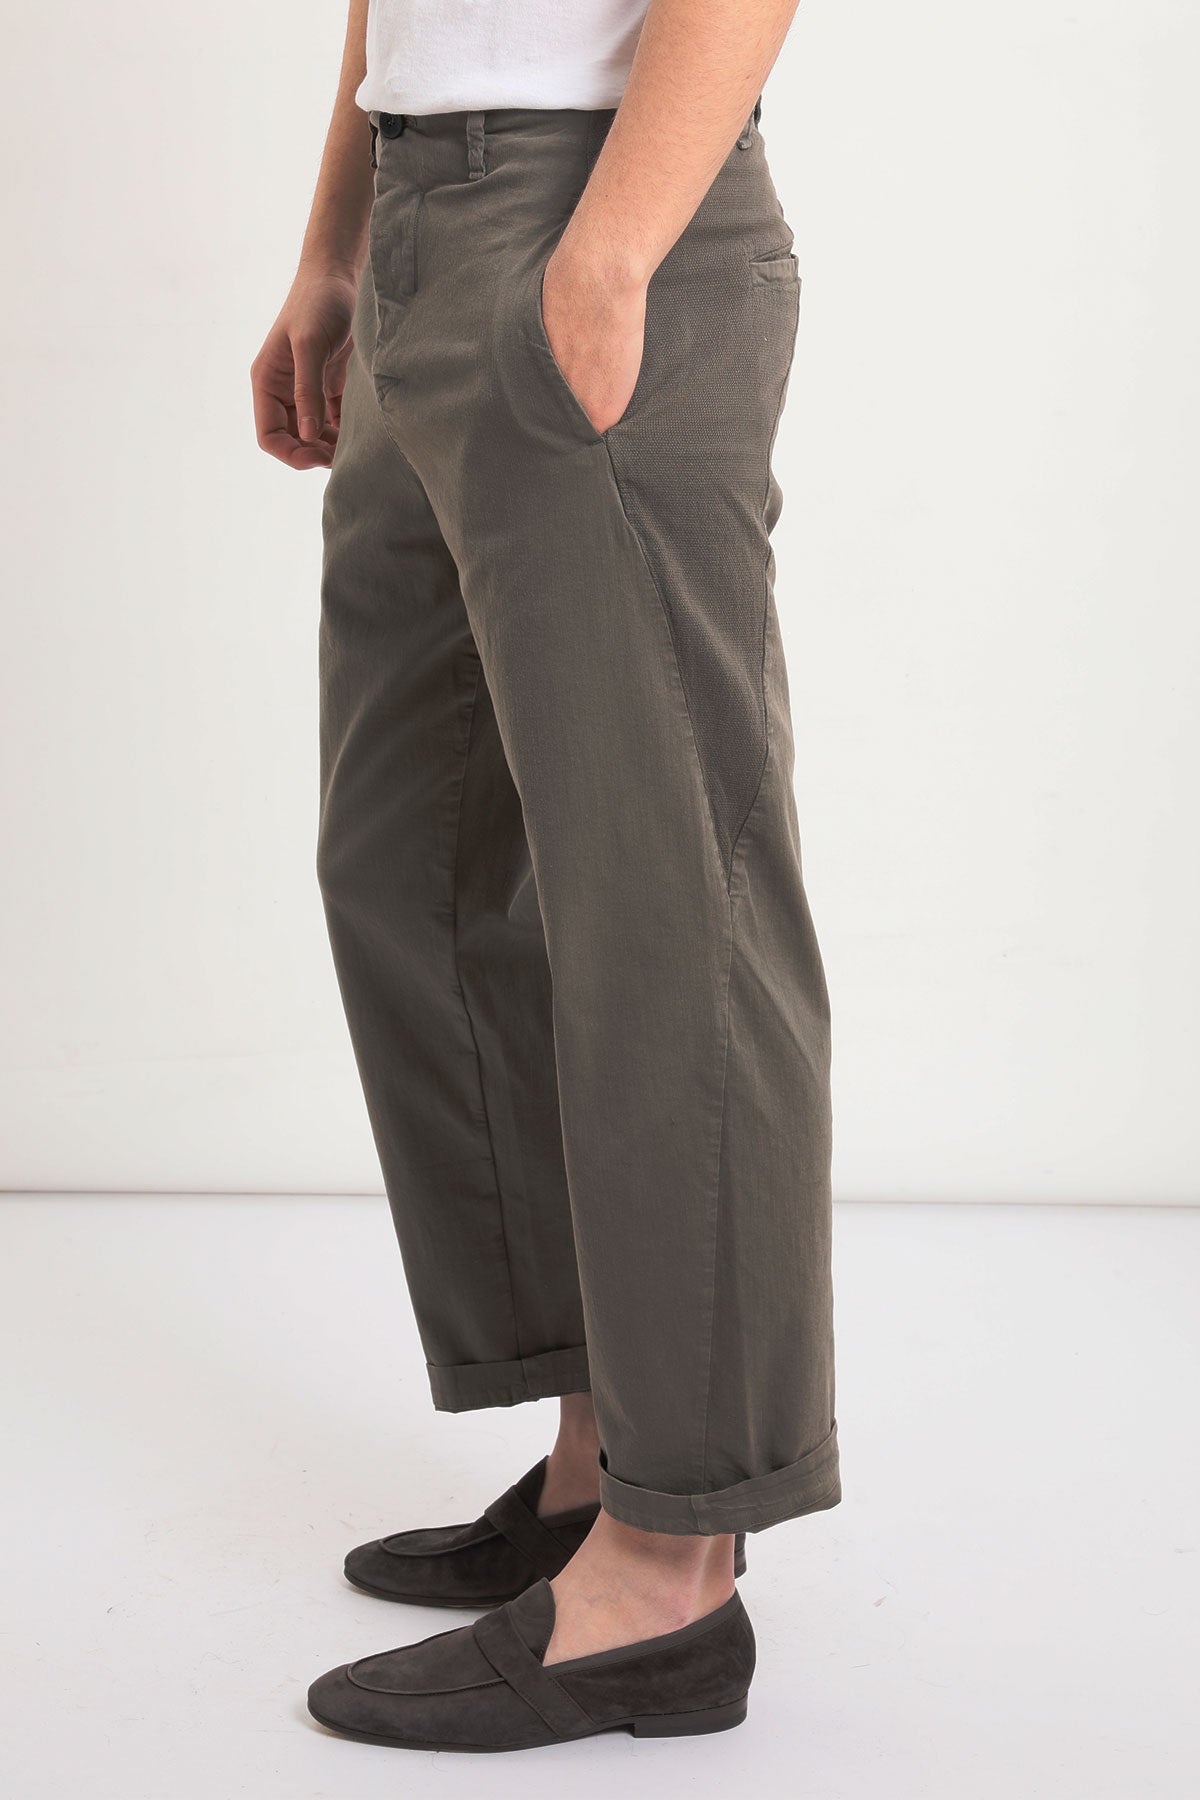 Transit Pantolon-Libas Trendy Fashion Store